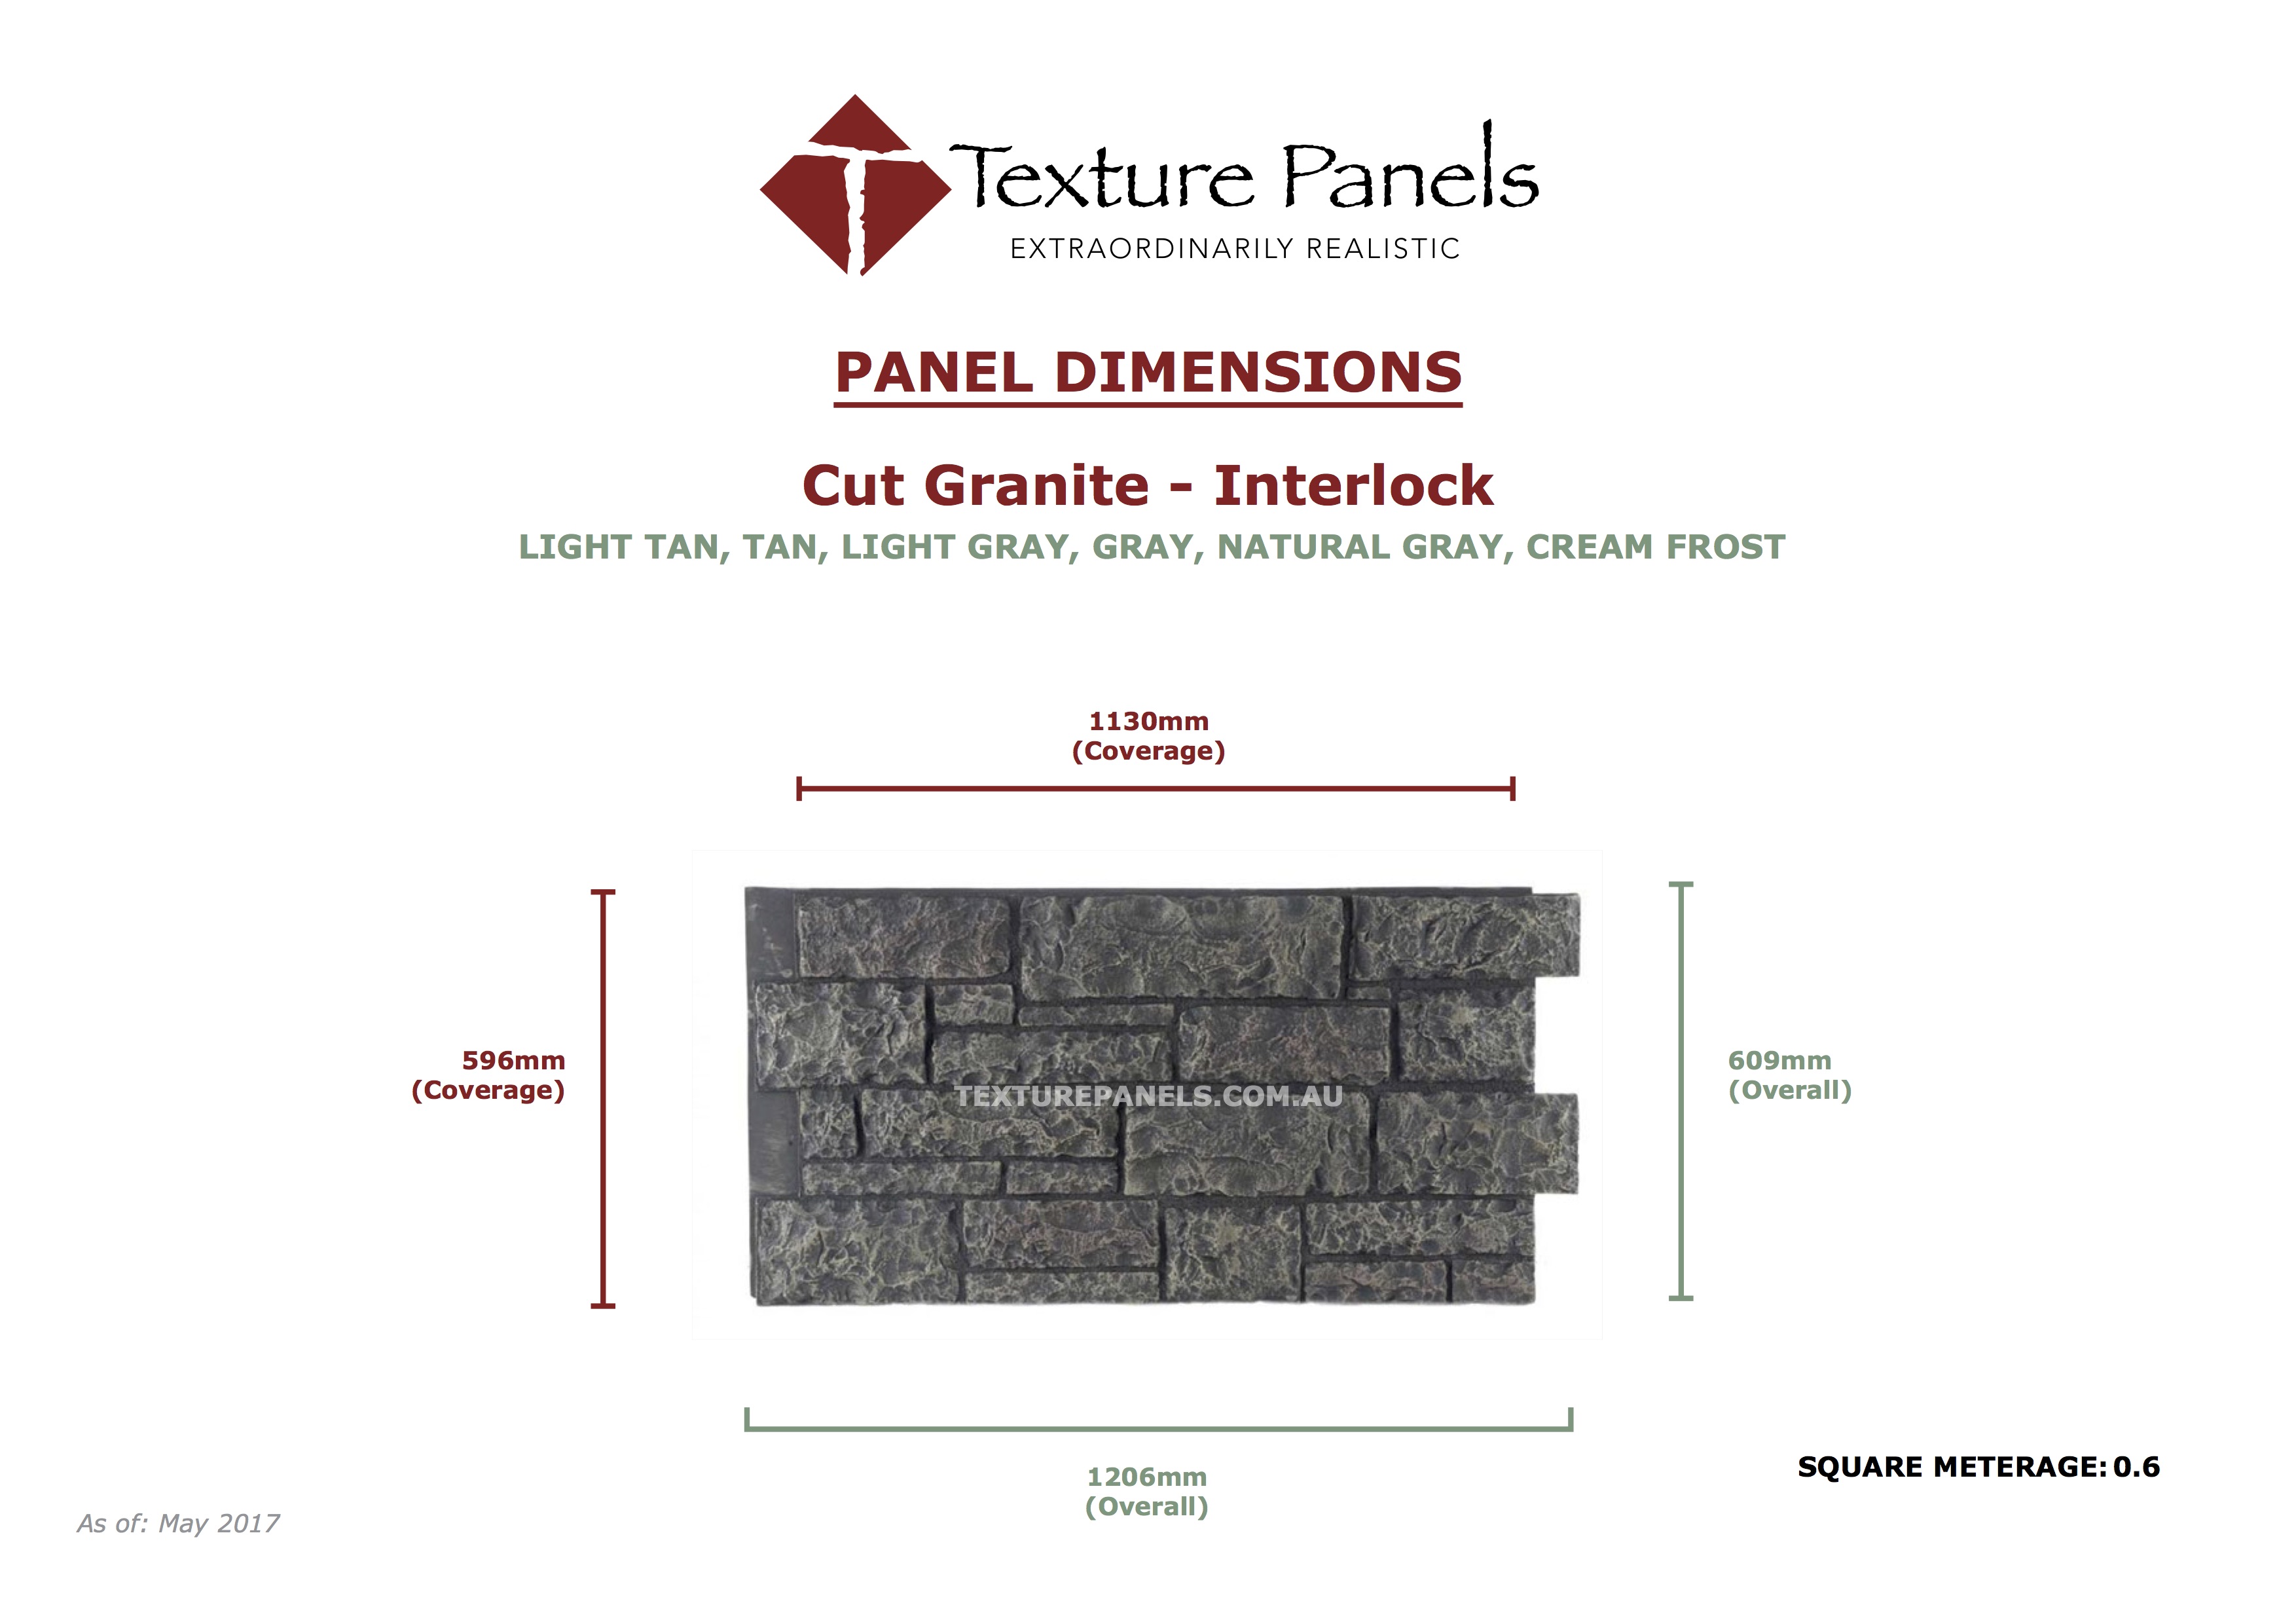 Cut Granite Interlocked - Dimensions